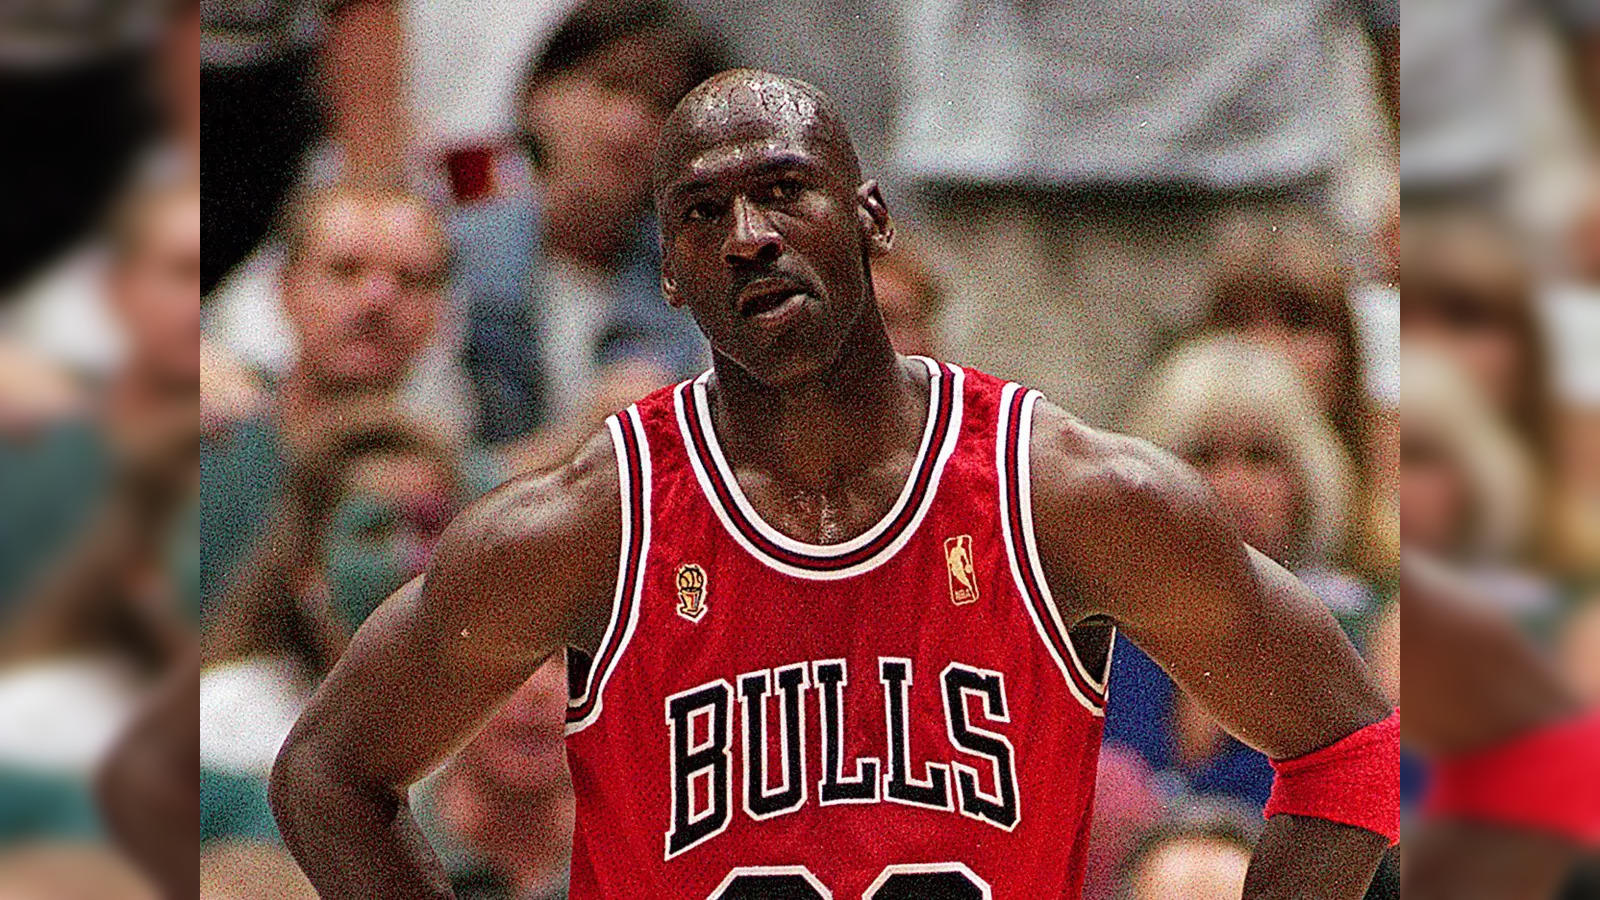 Michael Jordan's Flu Game Shoes Sell for $1.38 Million